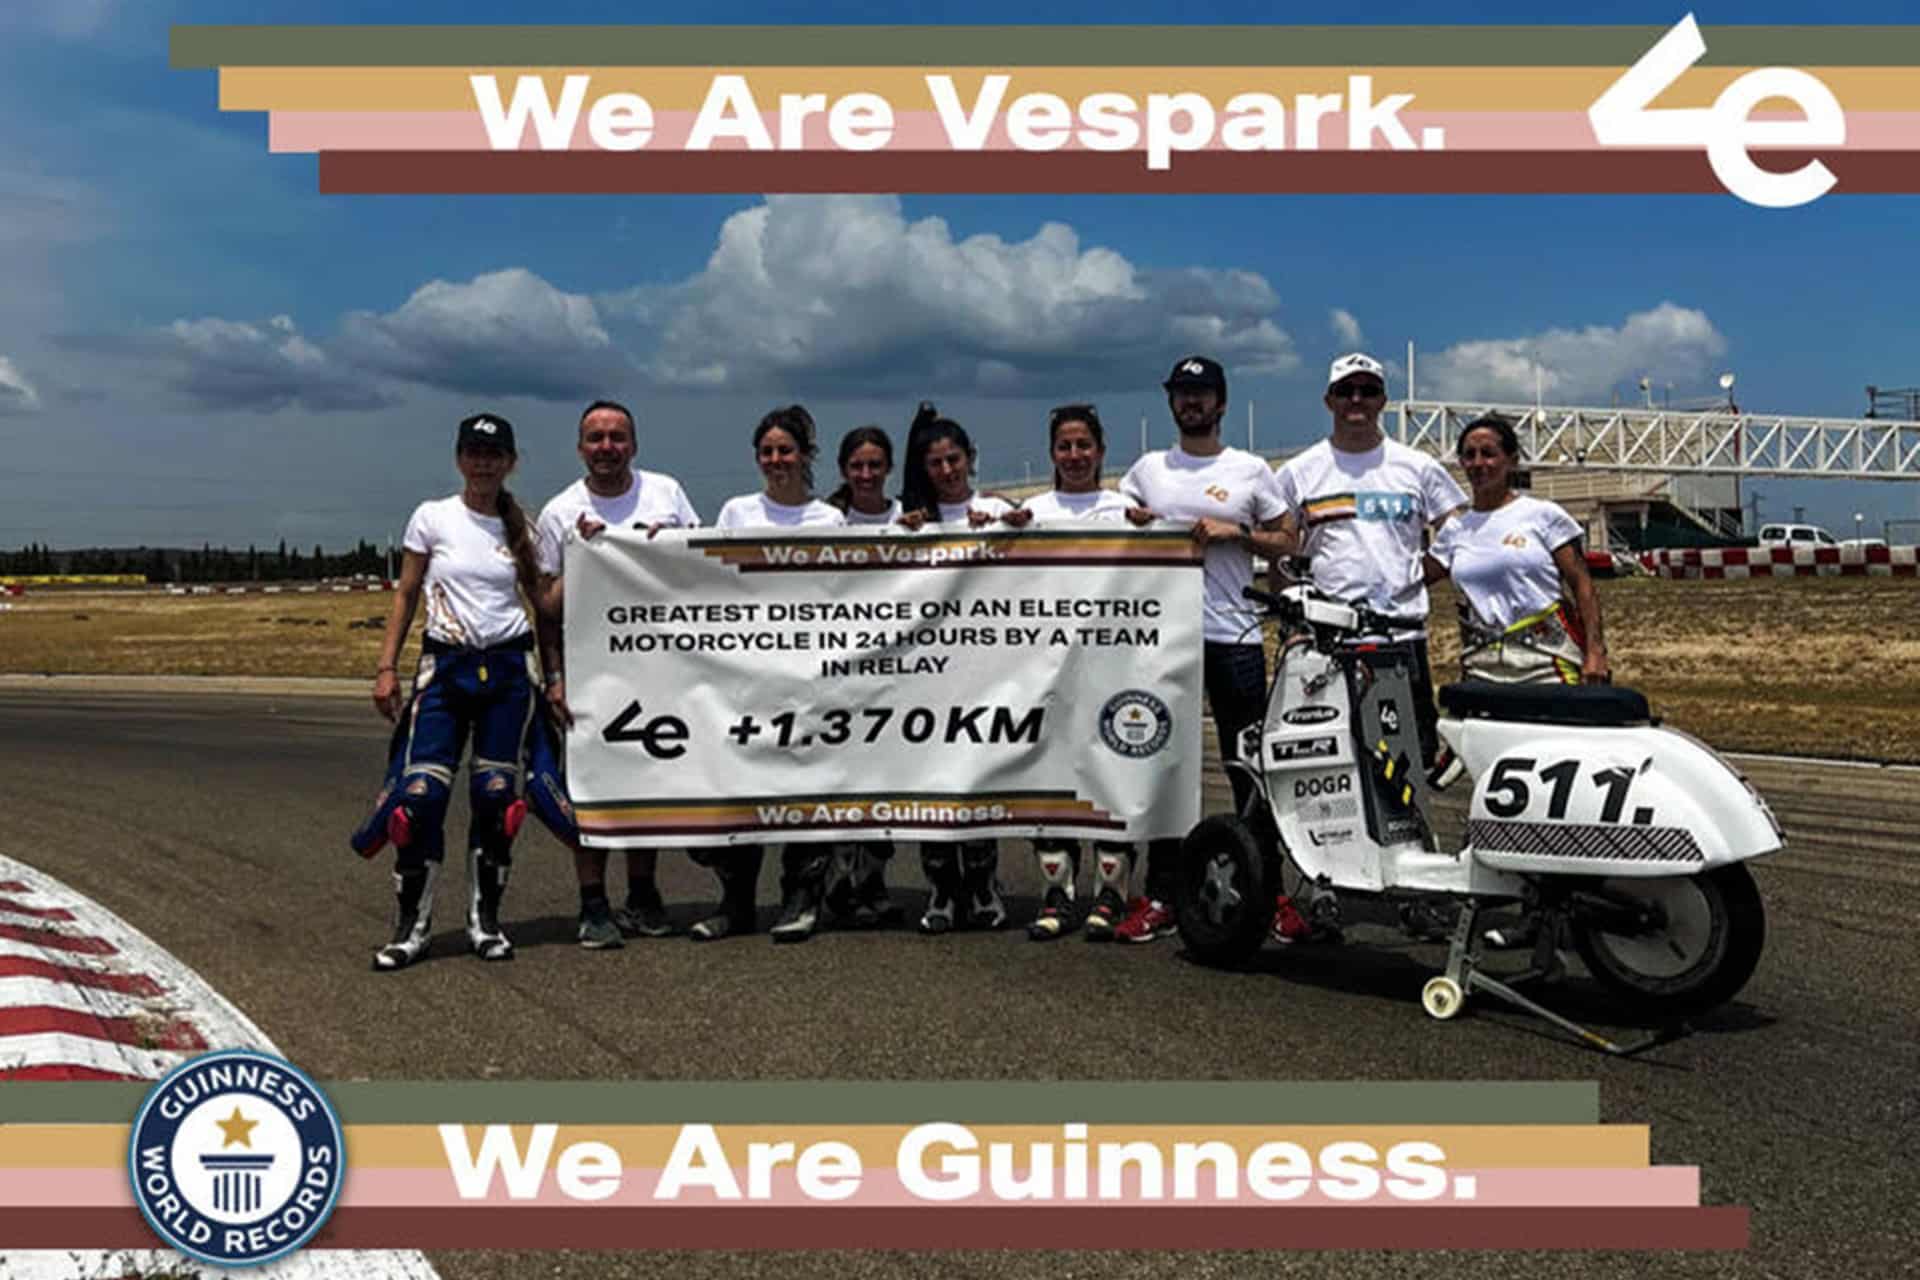 Un exalumno del Máster de Ingeniería del Motorsport de MotorLand Aragón logra un récord Guinness durante la Vespa The Resistance 24H